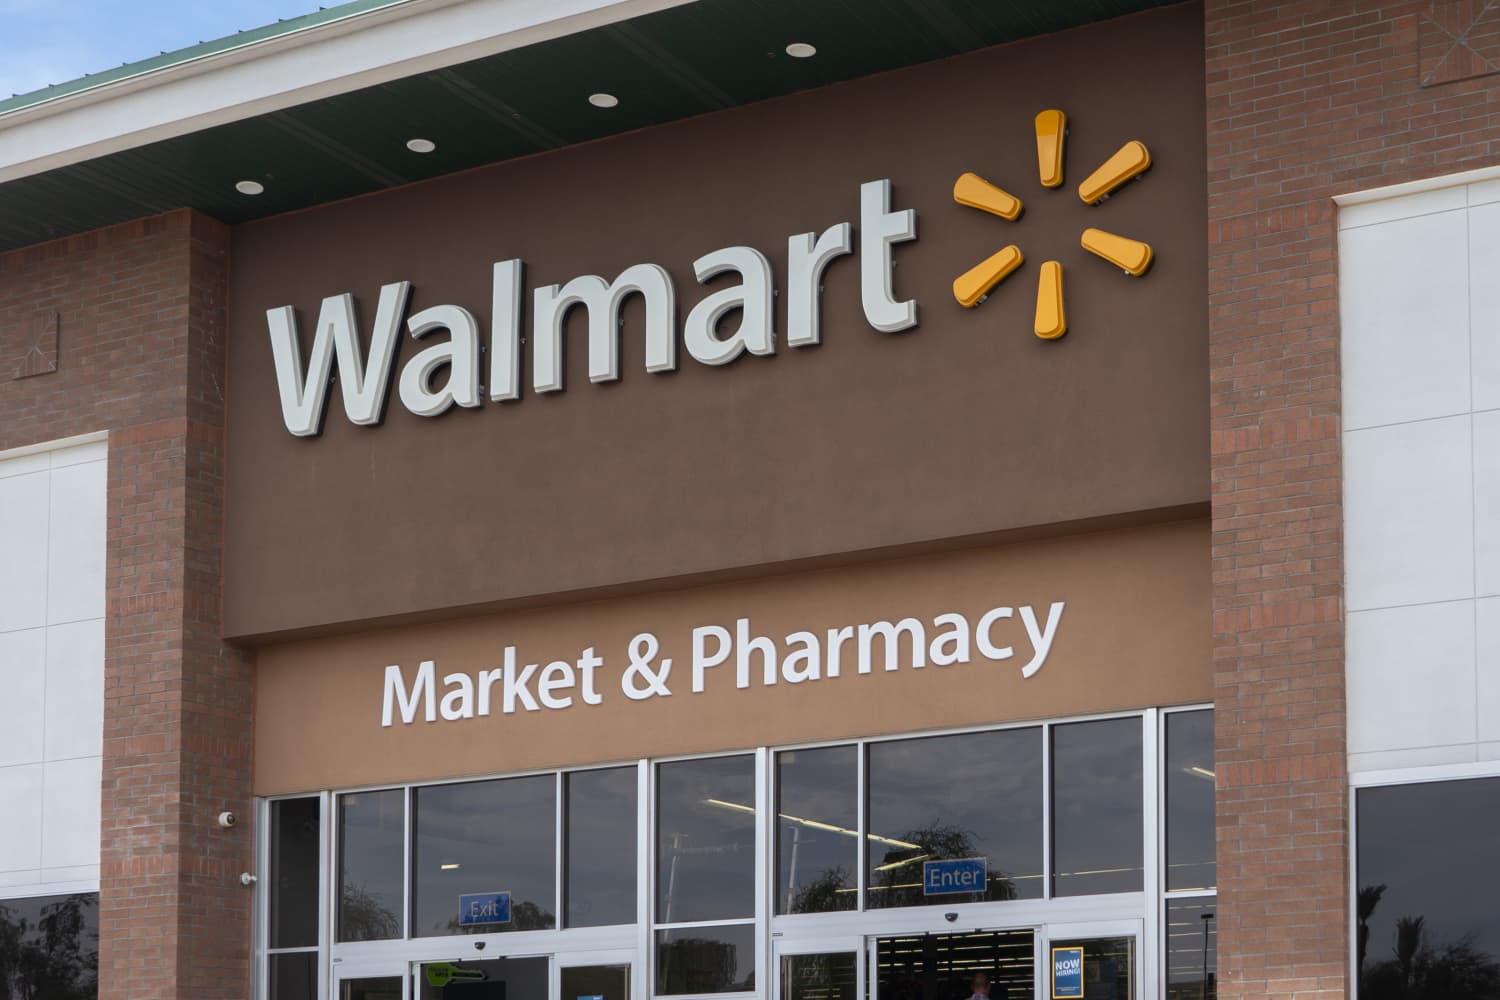 Giờ của Walmart cho Ngày Lễ Tạ ơn 2022 là gì?  – Giờ nghỉ lễ của Walmart